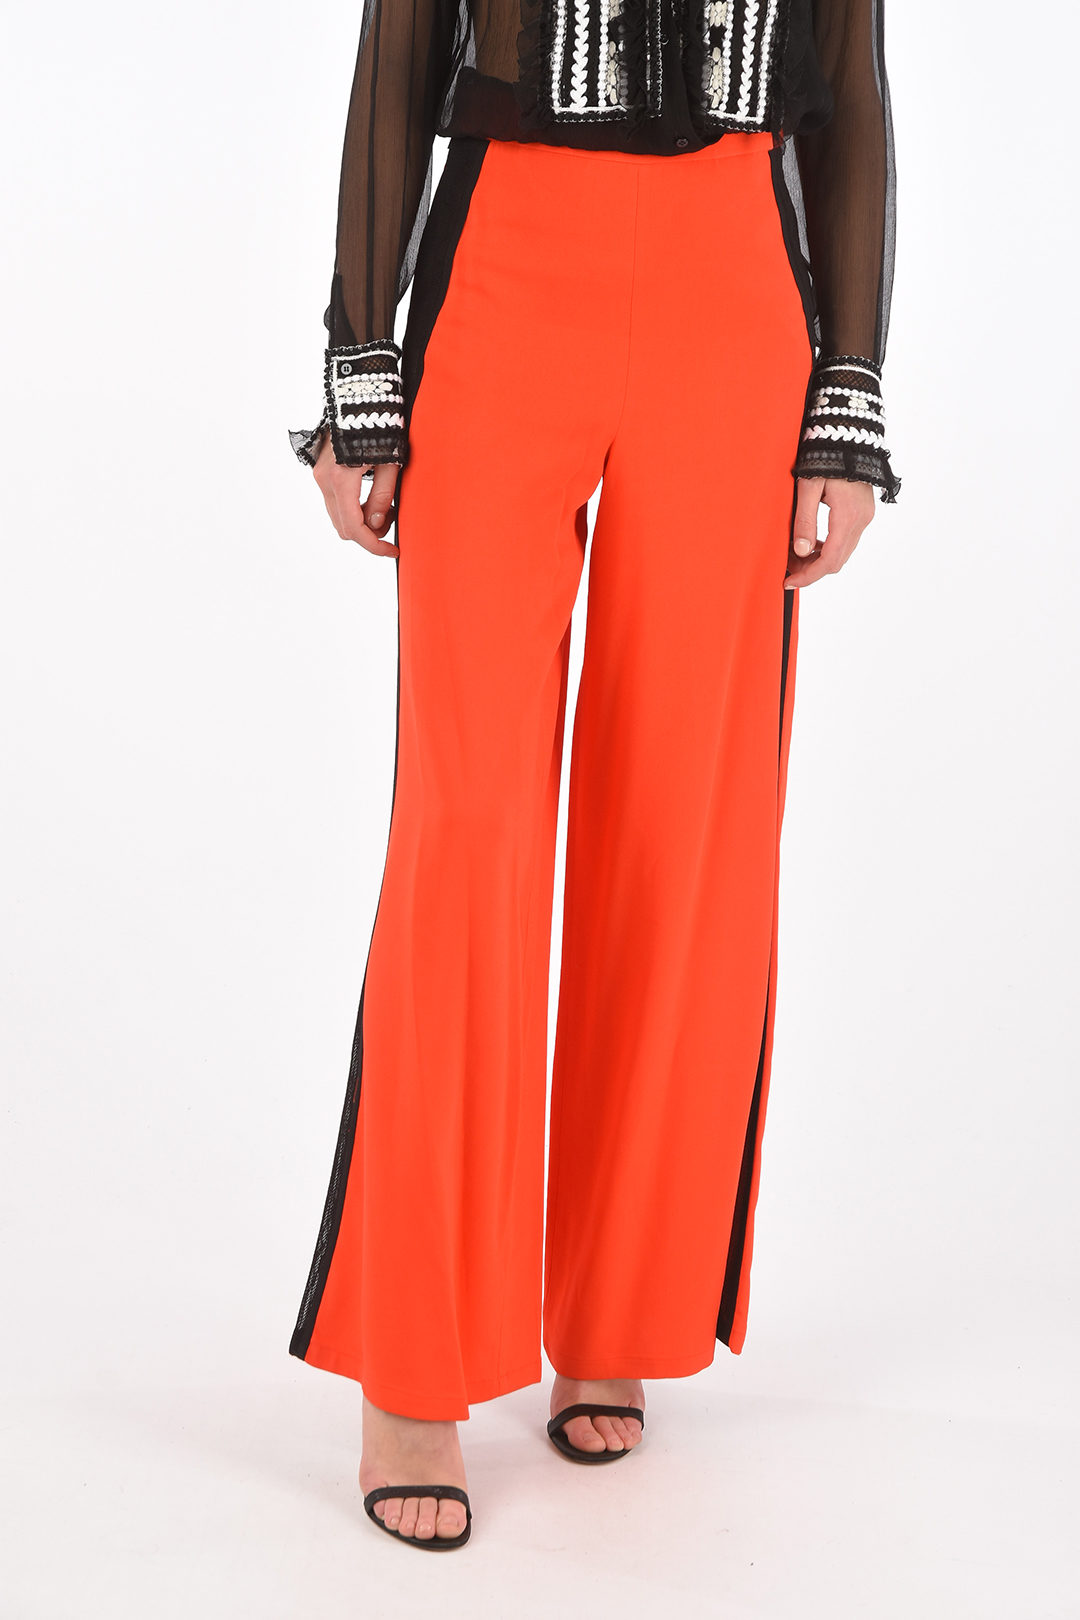 High Waist Side Cut Out Skirt – 3 jems boutique